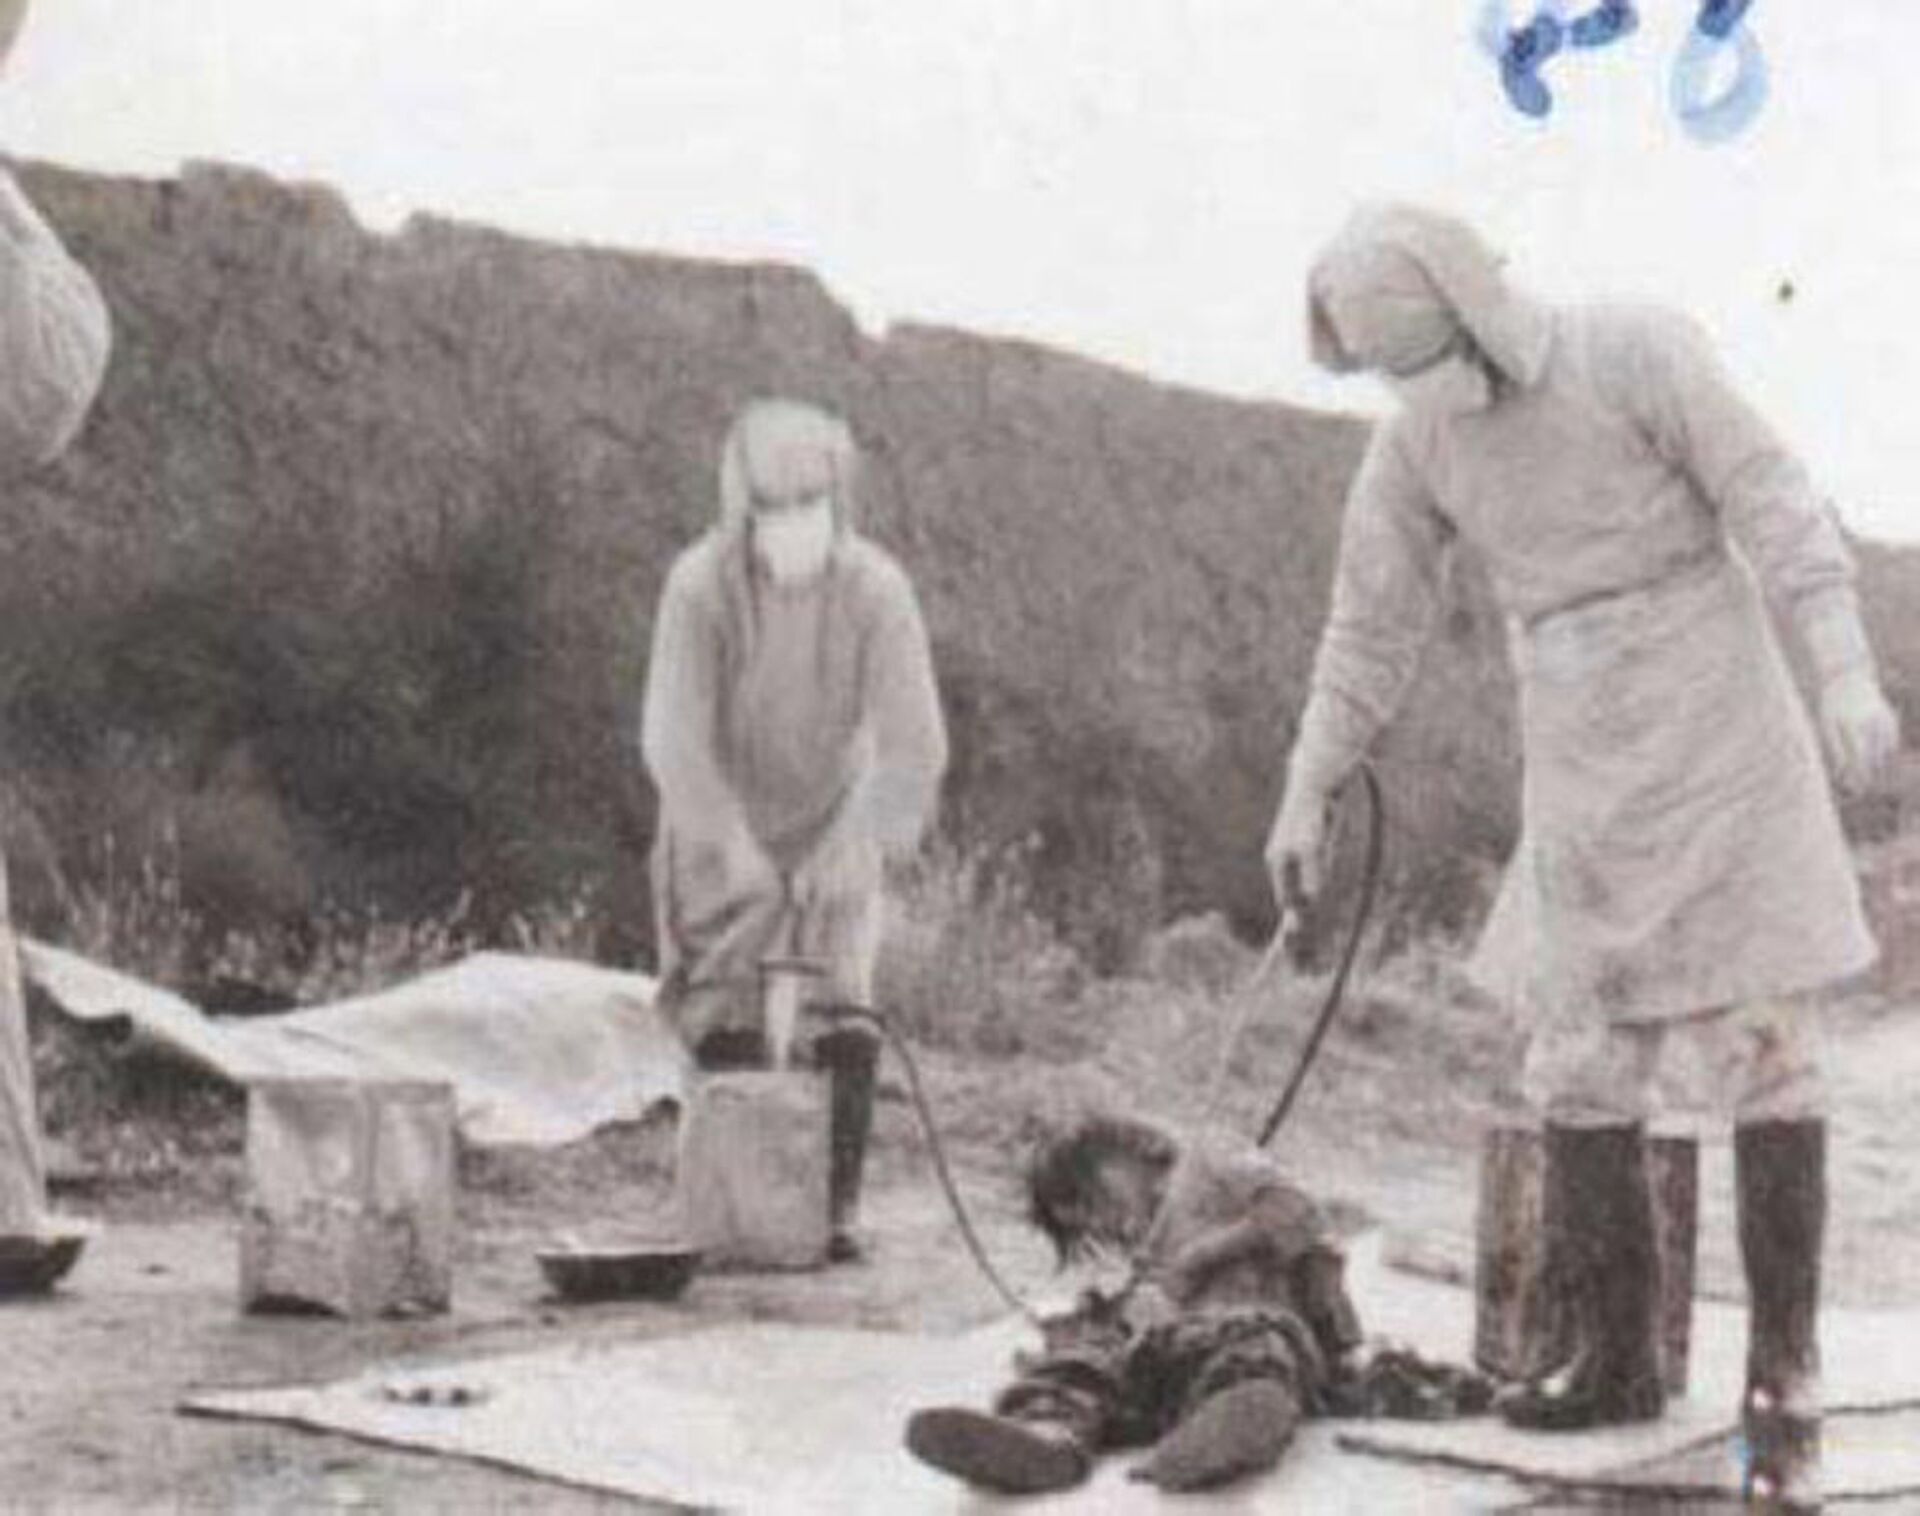 Thí nghiệm trên người của Đơn vị 731 Nhật Bản ở Trung Quốc năm 1940 - Sputnik Việt Nam, 1920, 05.10.2021